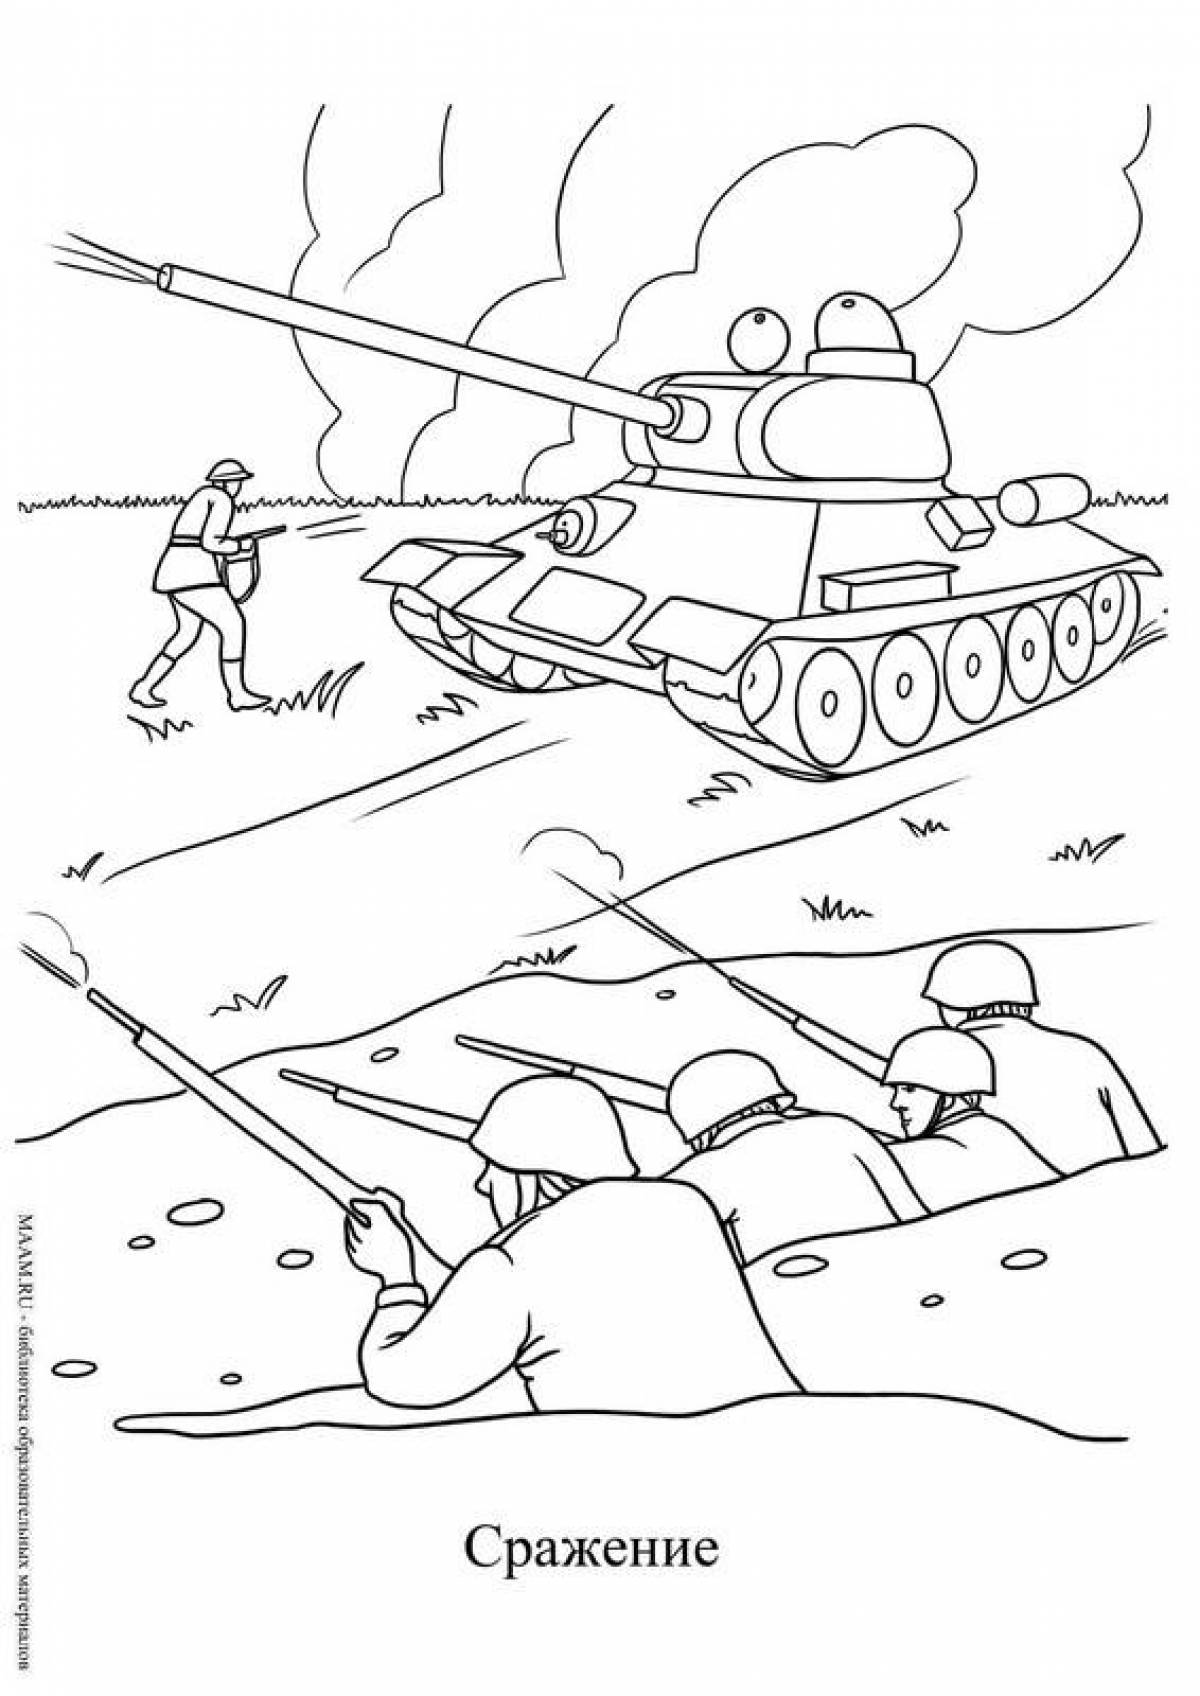 Stalingrad battle for kids #25